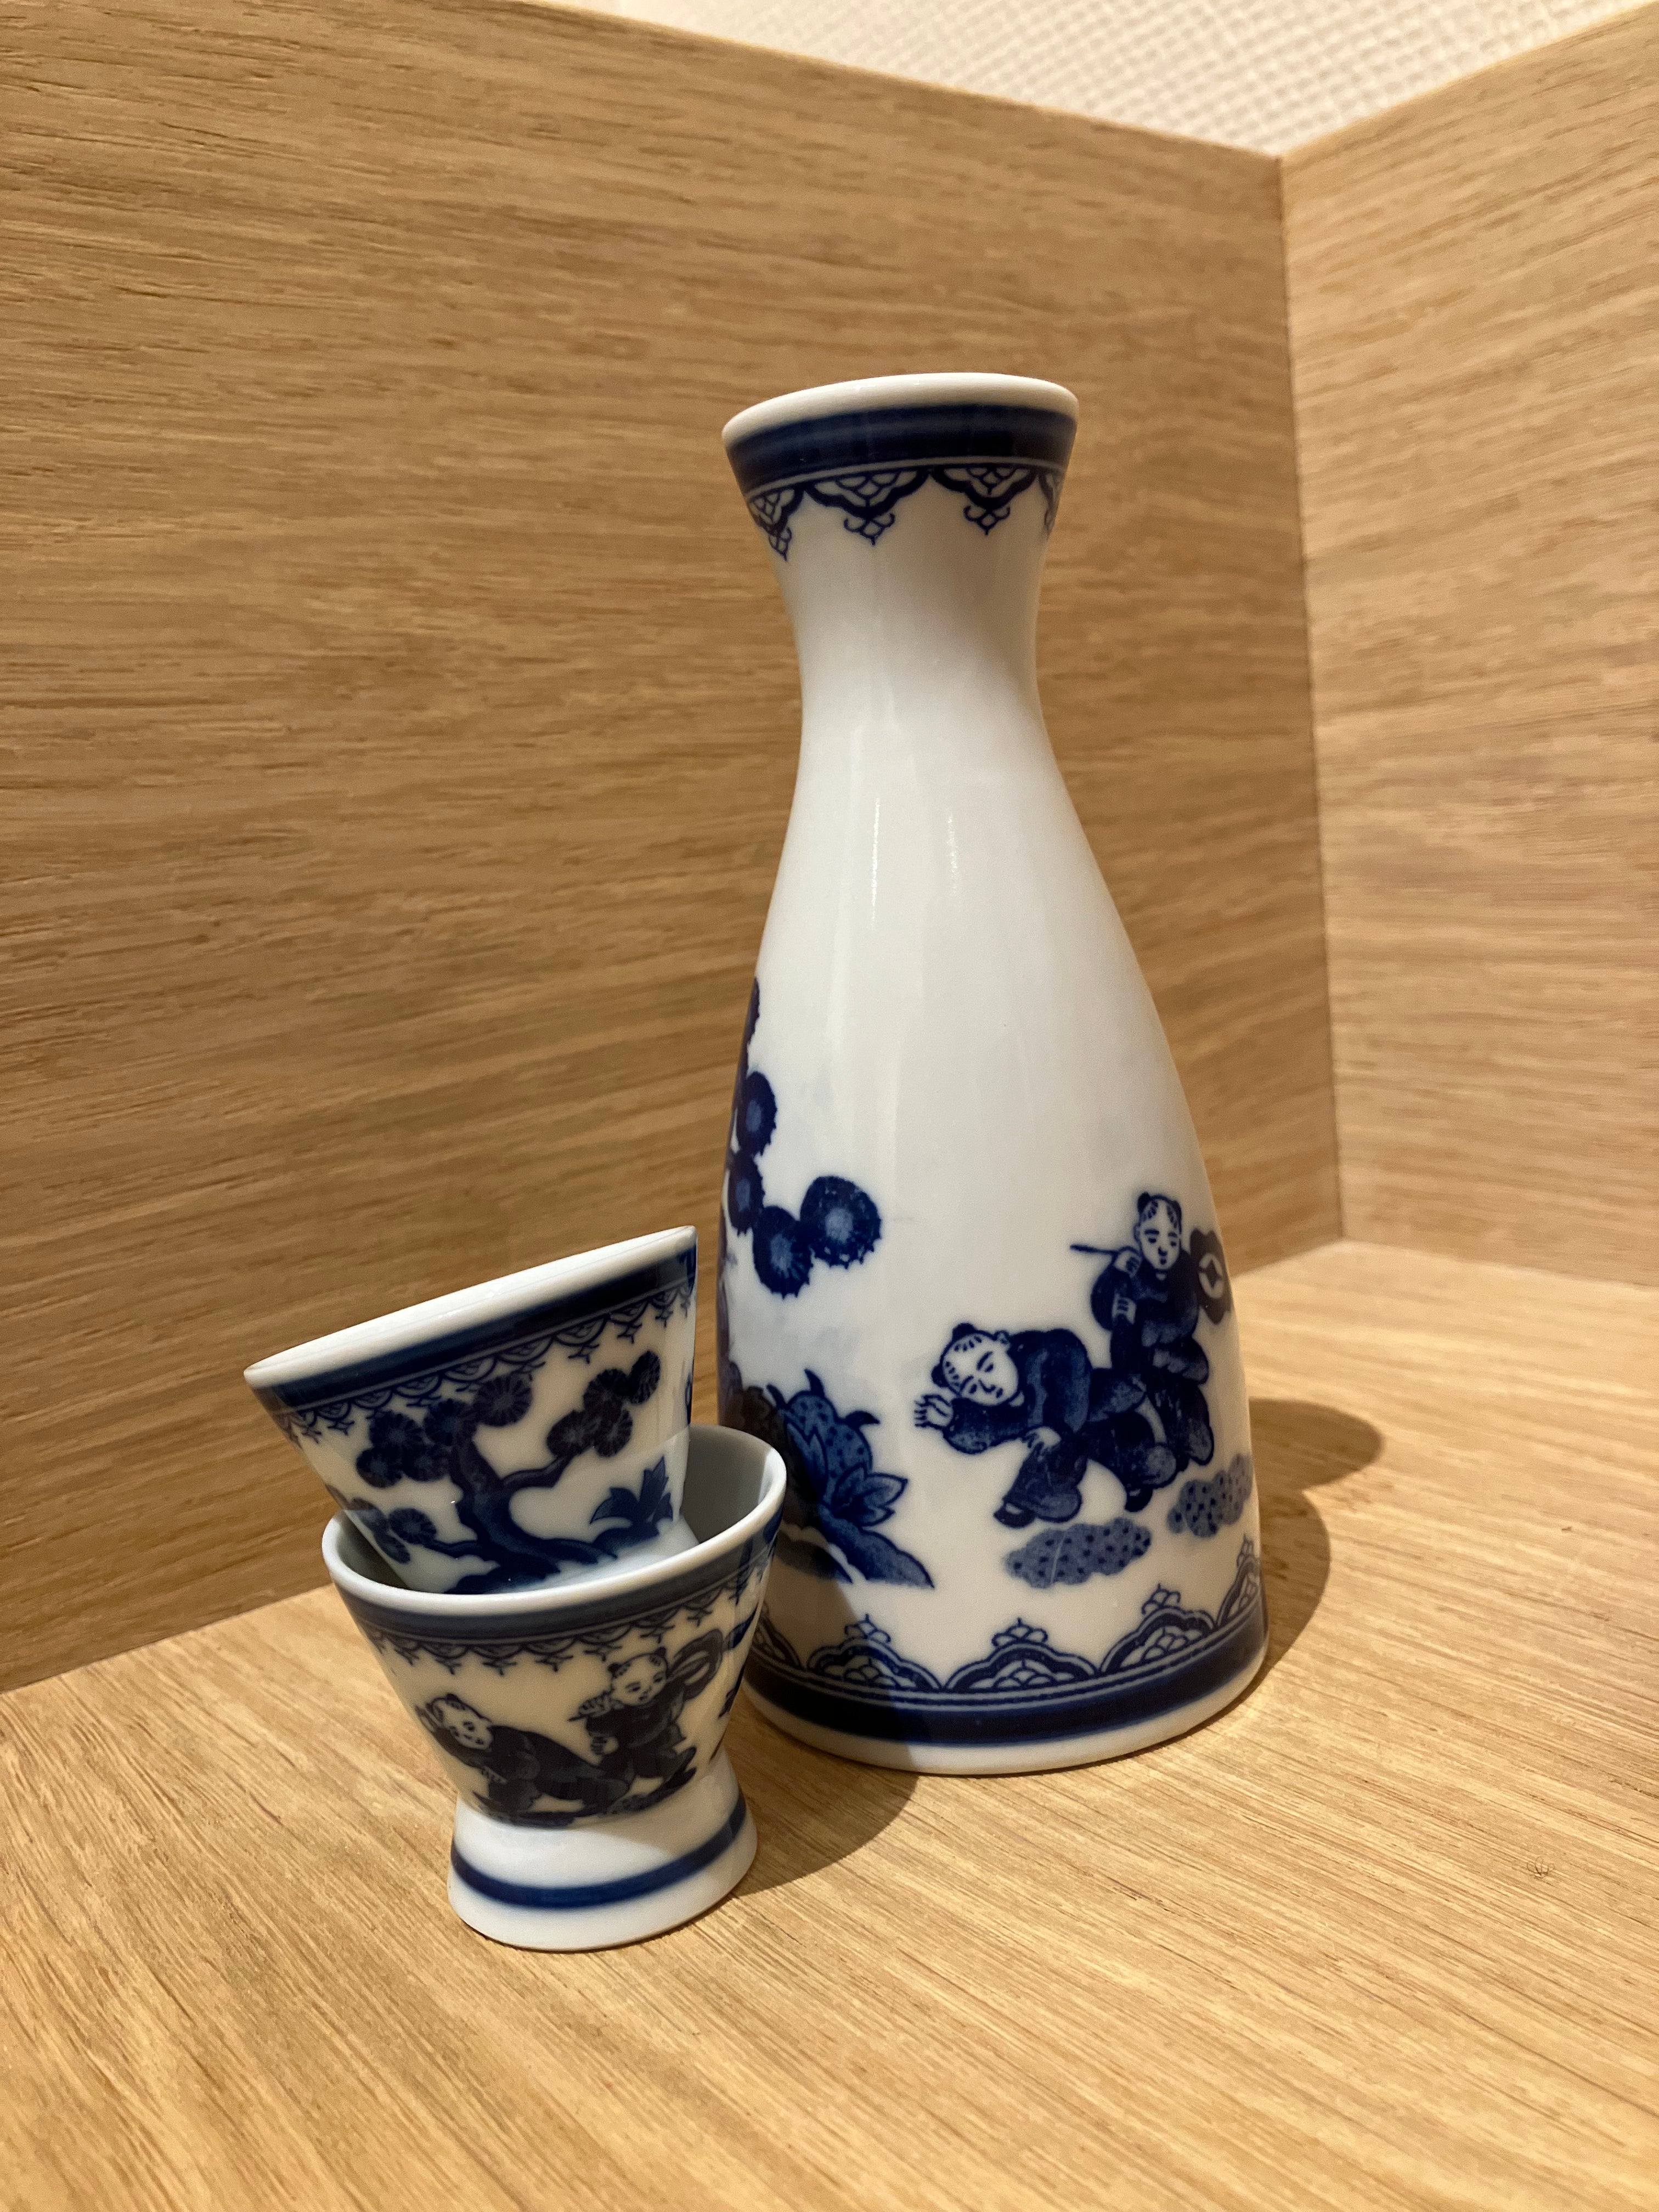 Sake jug with blue Japanese motif